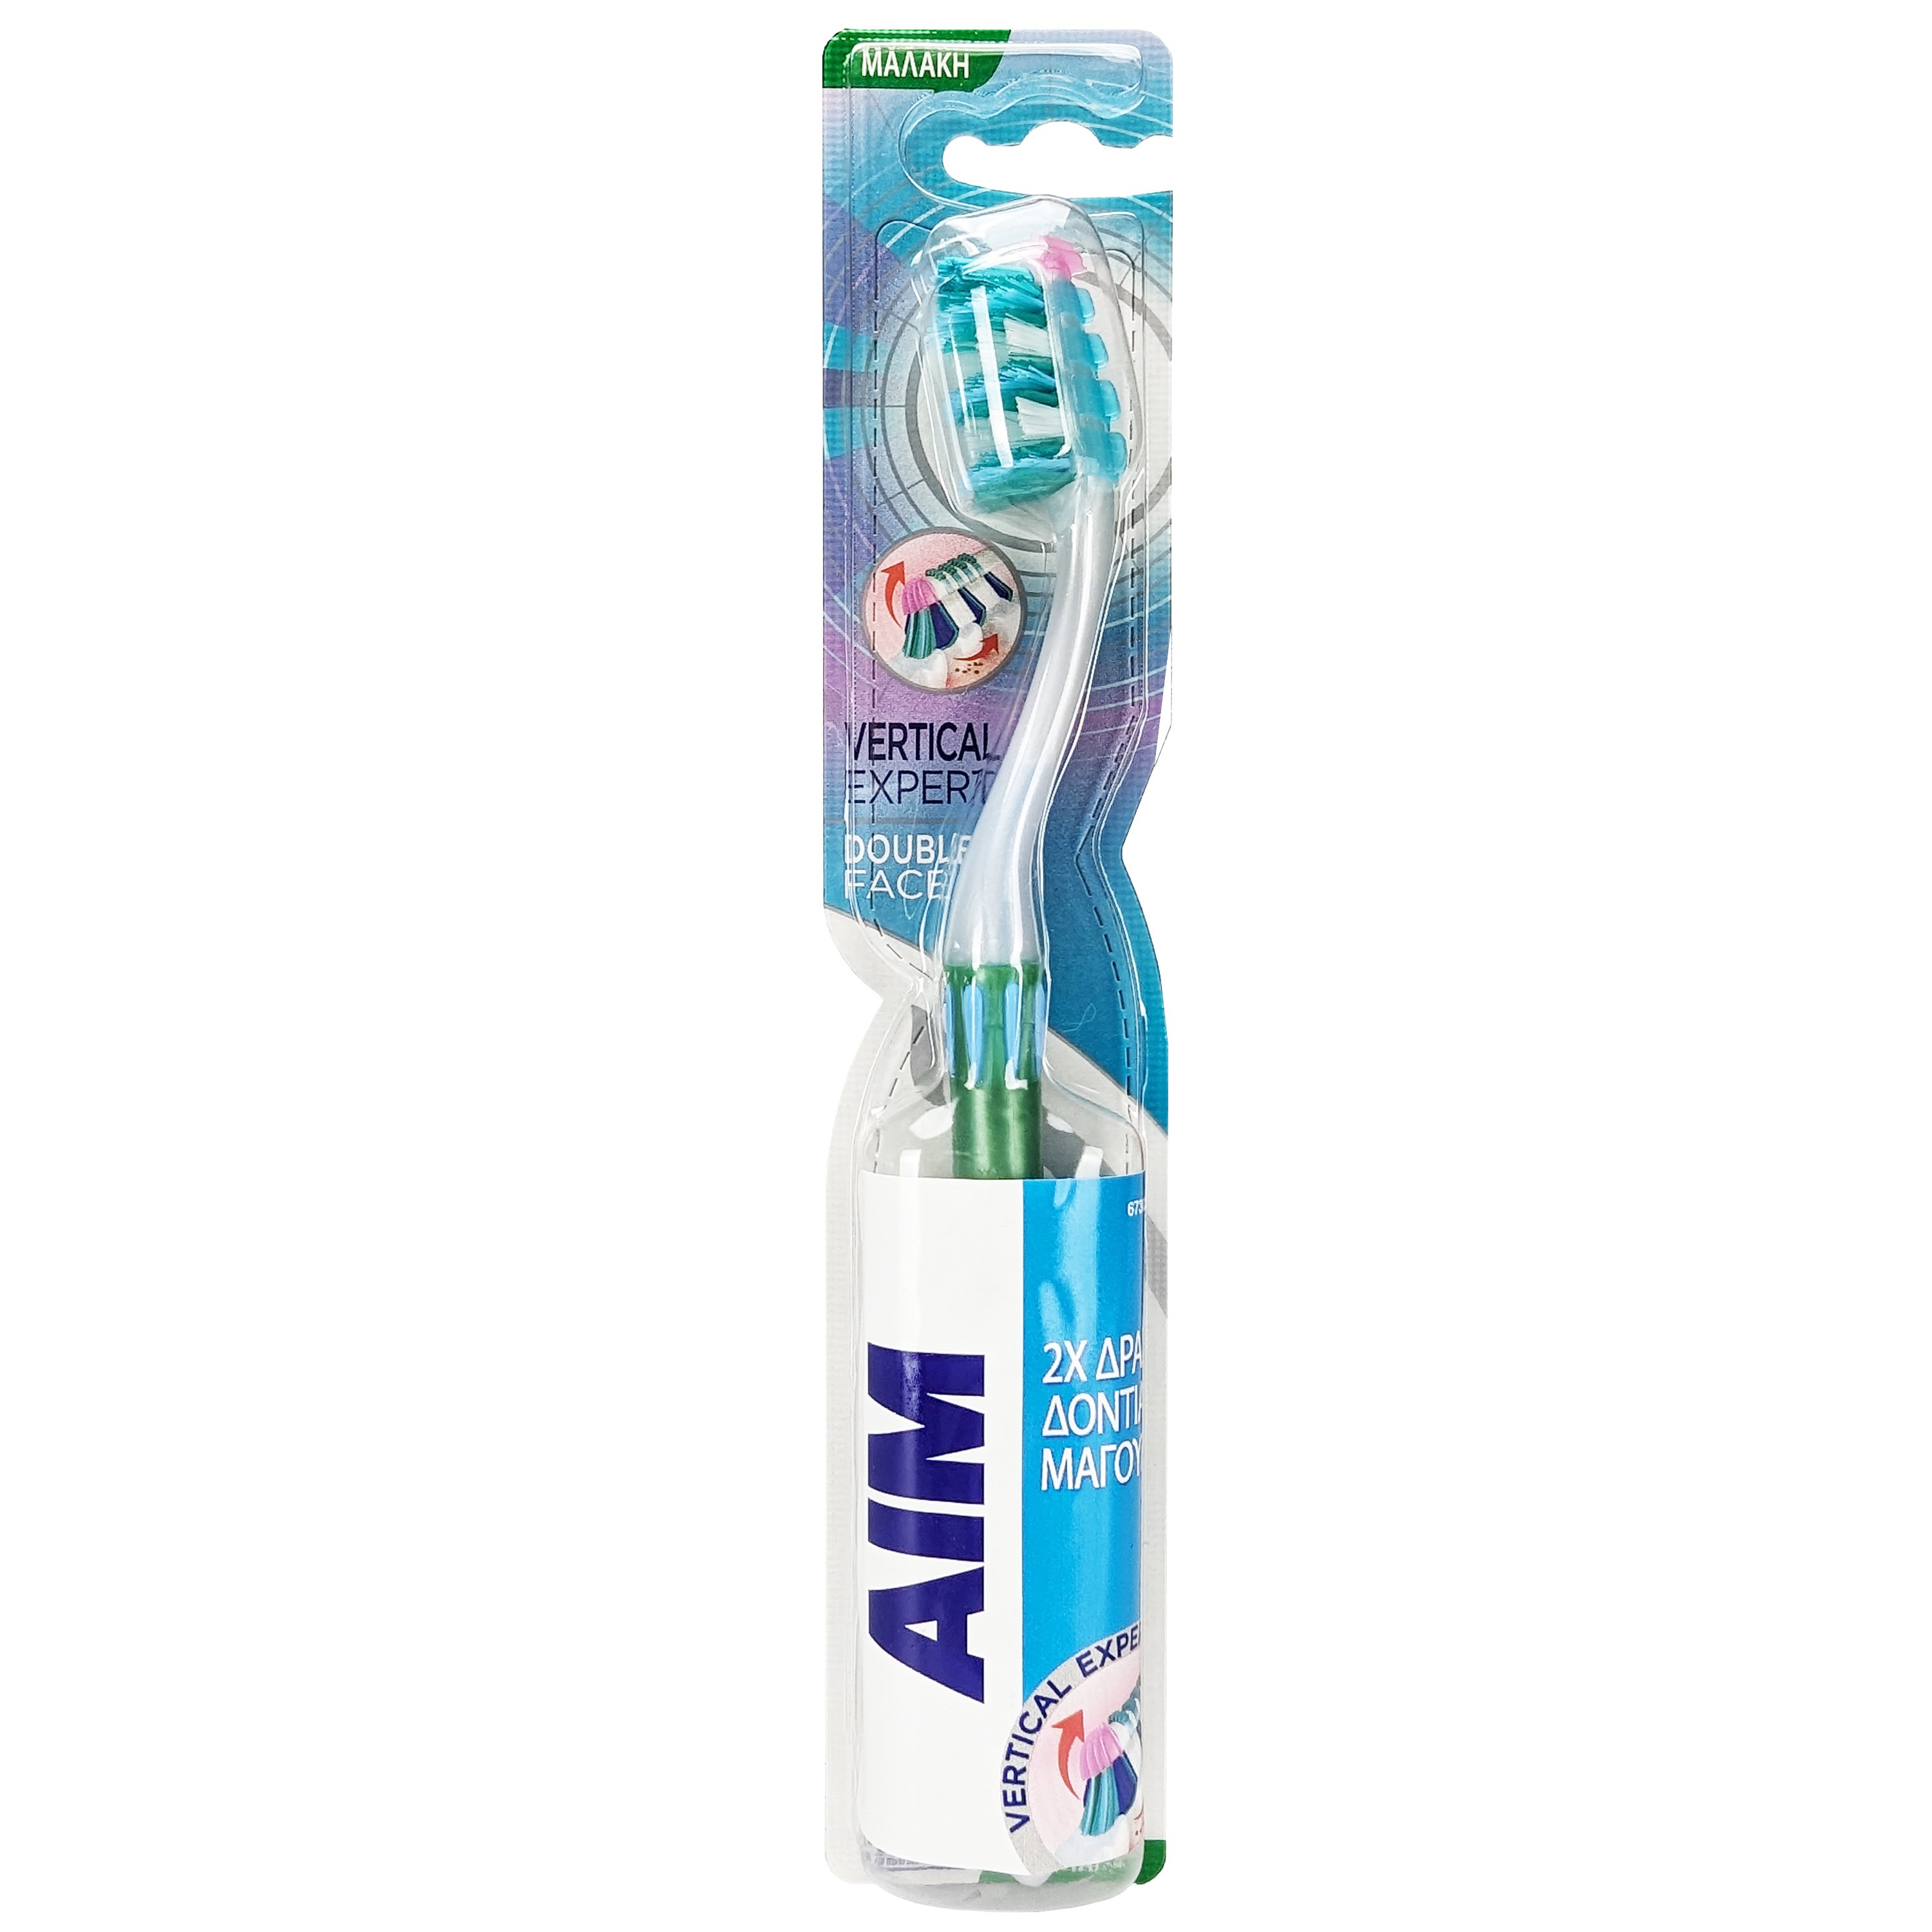 Aim Vertical Expert Double Face Soft Toothbrush Μαλακή Οδοντόβουρτσα με Θυσάνους σε Σχήμα Βεντάλιας για Καθαρισμό των Μεσοδόντιων Διαστημάτων 1 Τεμάχιο – Πράσινο